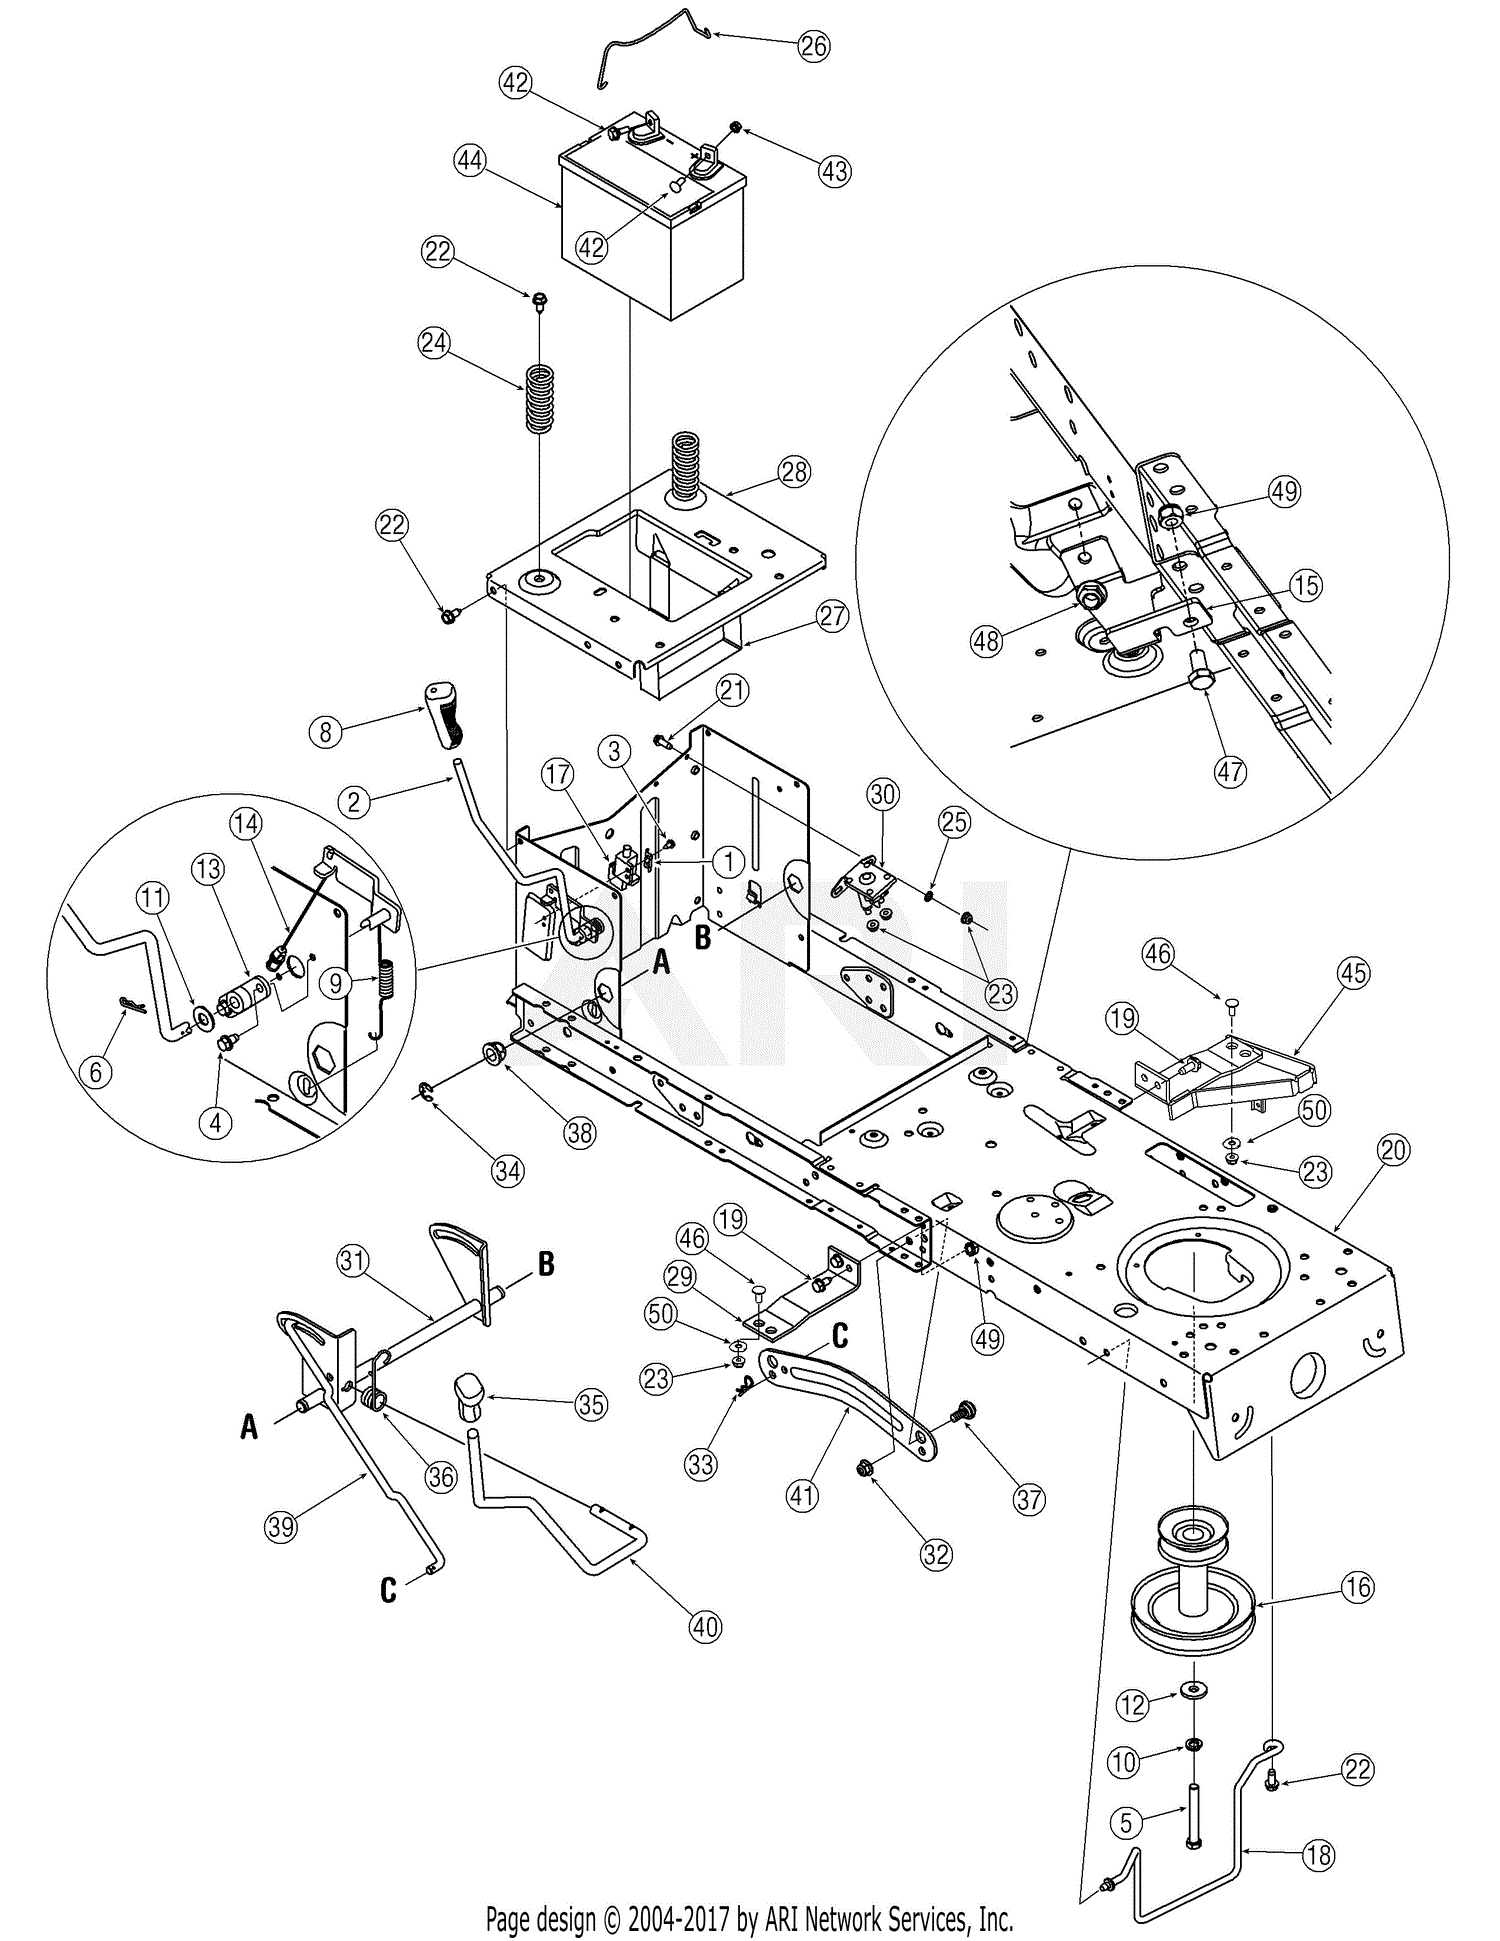 32 Bolens Lawn Mower Parts Diagram Model 13am762f765